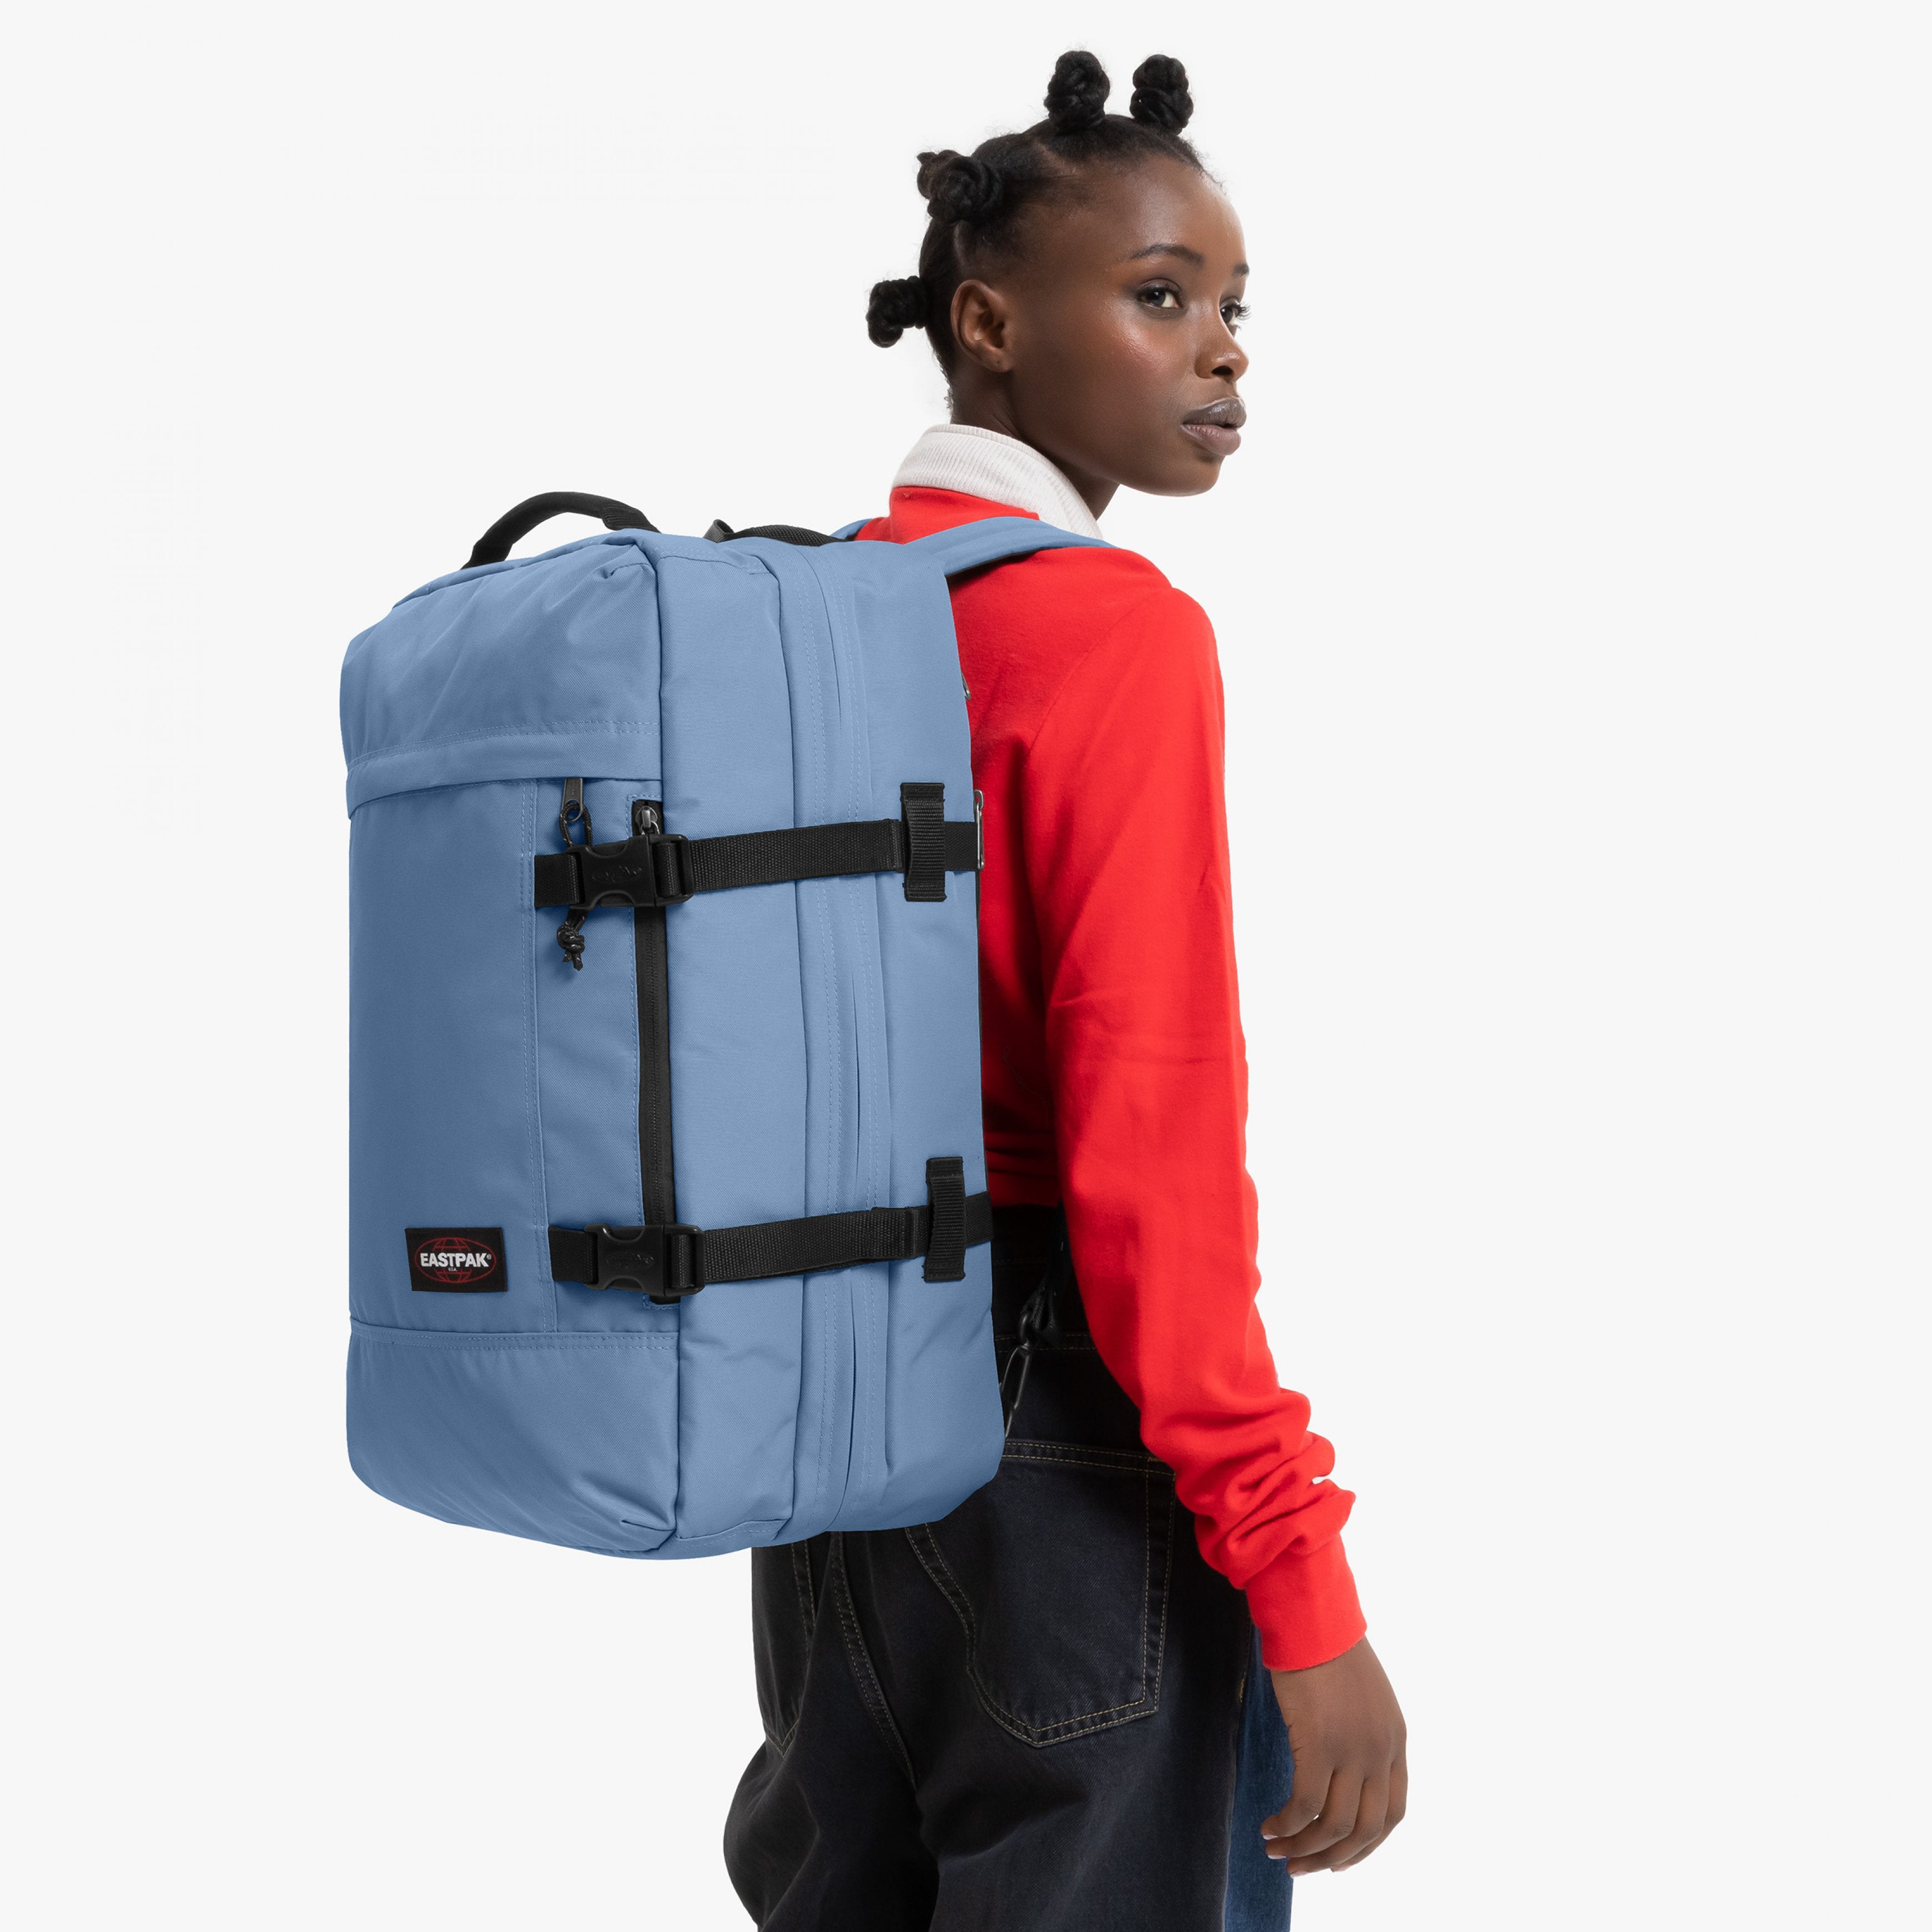 Eastpak-Travelpack-Large Backpack With Laptop Sleeve-Charming Blue-Ek0A5Bbr5D51